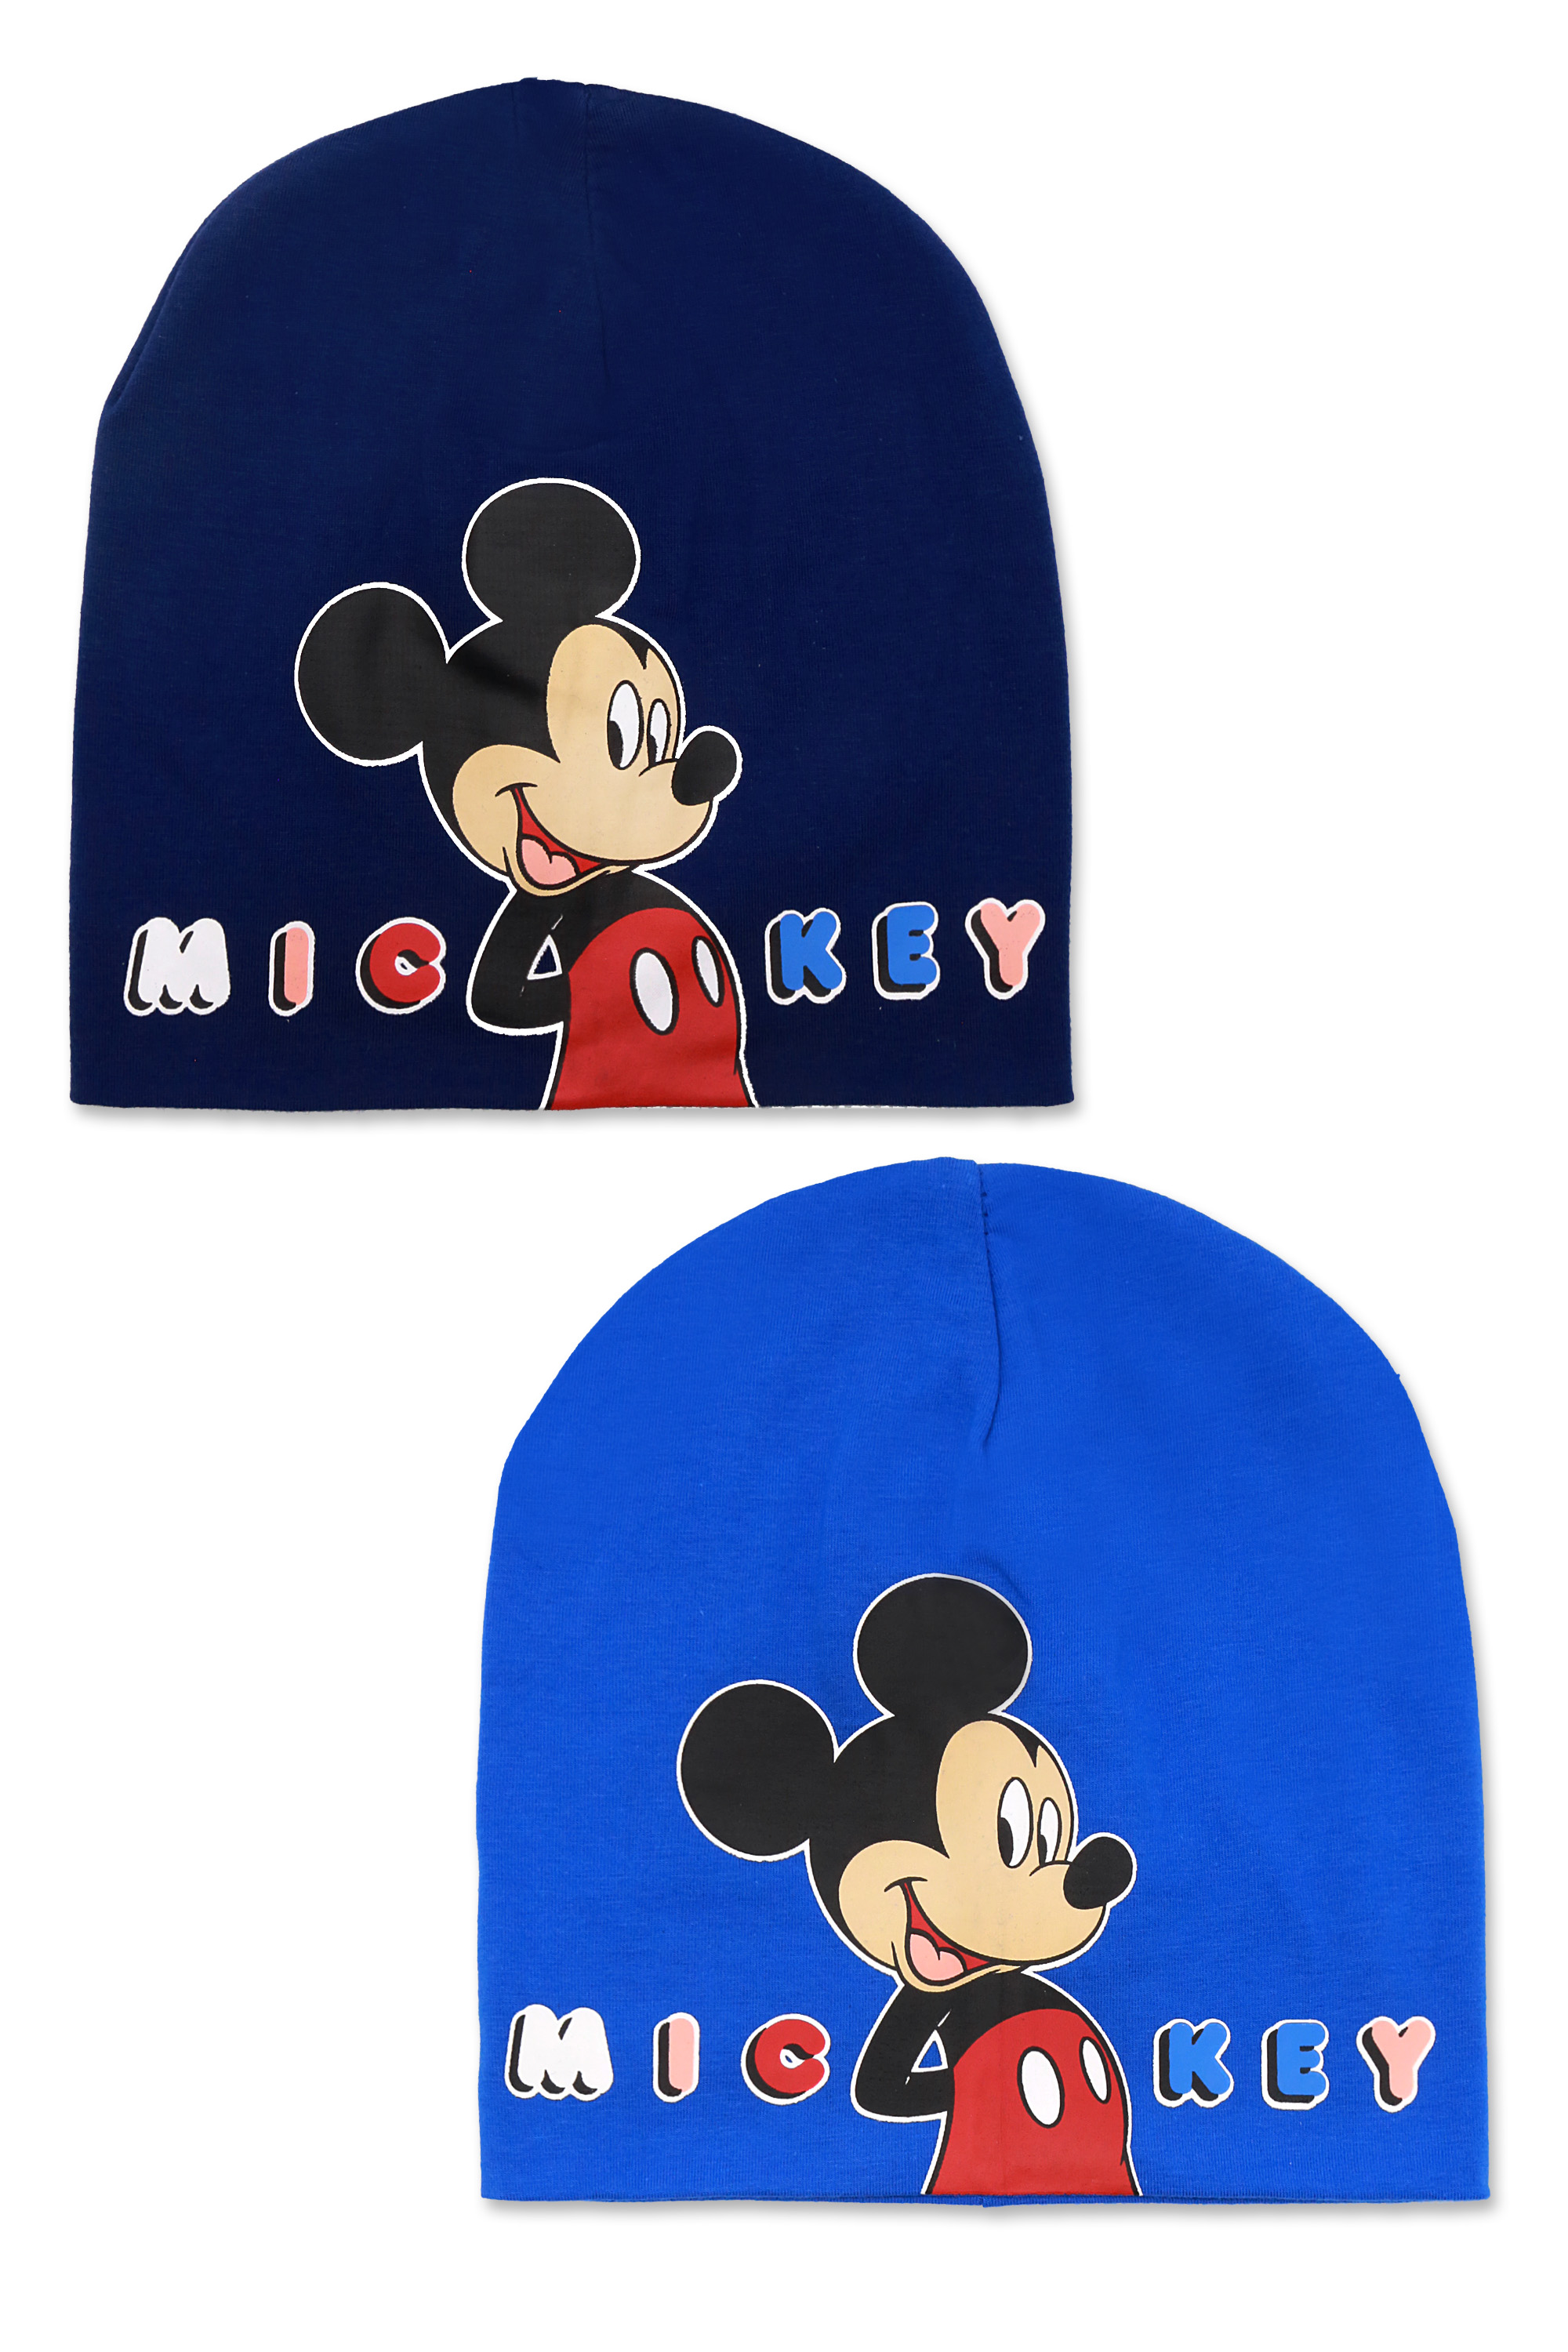 Mickey Mouse - licence Chlapecká čepice - Mickey Mouse ST-309, světle/ tmavě modrá Barva: Modrá tmavě, Velikost: velikost 52